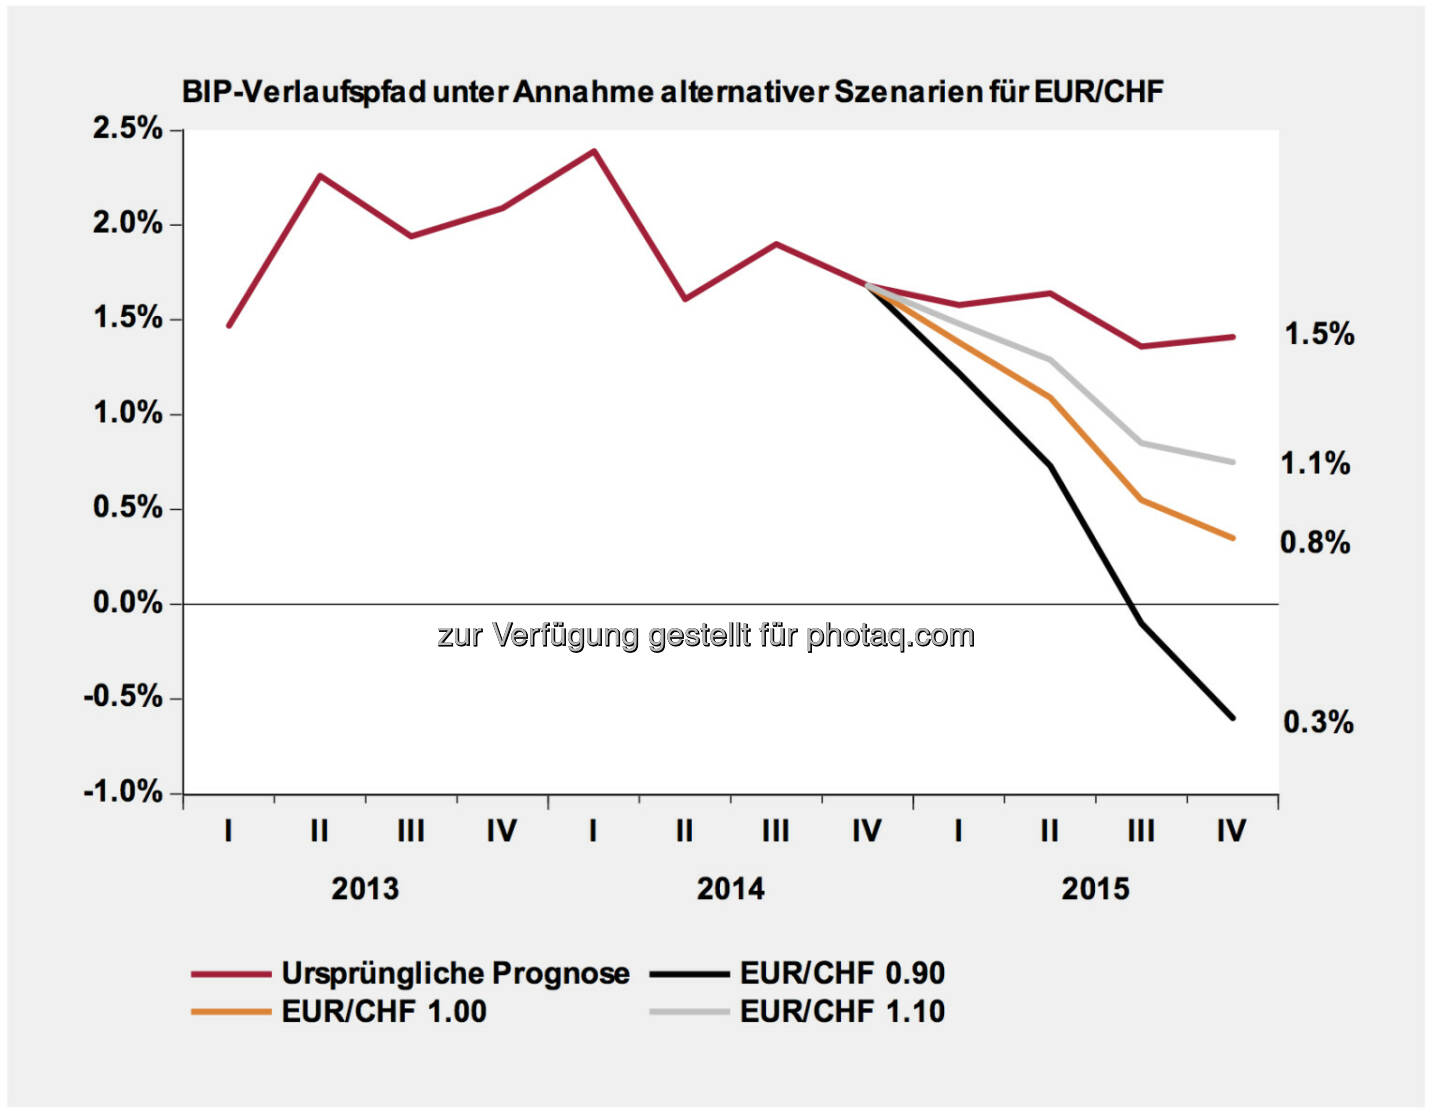 CHF-Entwicklung & Szenarien- Werte rechts: Durchschnitt der Jahresveränderungsraten im 2015. Lesebeispiel BIP: 0.8% bei EUR/CHF 1.0 entspricht den folgenden vier Jahresveränderungsraten: Q1 2015 1.4%, Q2 2015 1.1%, Q3 2015 0.6%, Q4 2015 0.3%(Erstellt und verabschiedet durch das Economics Department Swiss Life Asset Management AG Zürich)